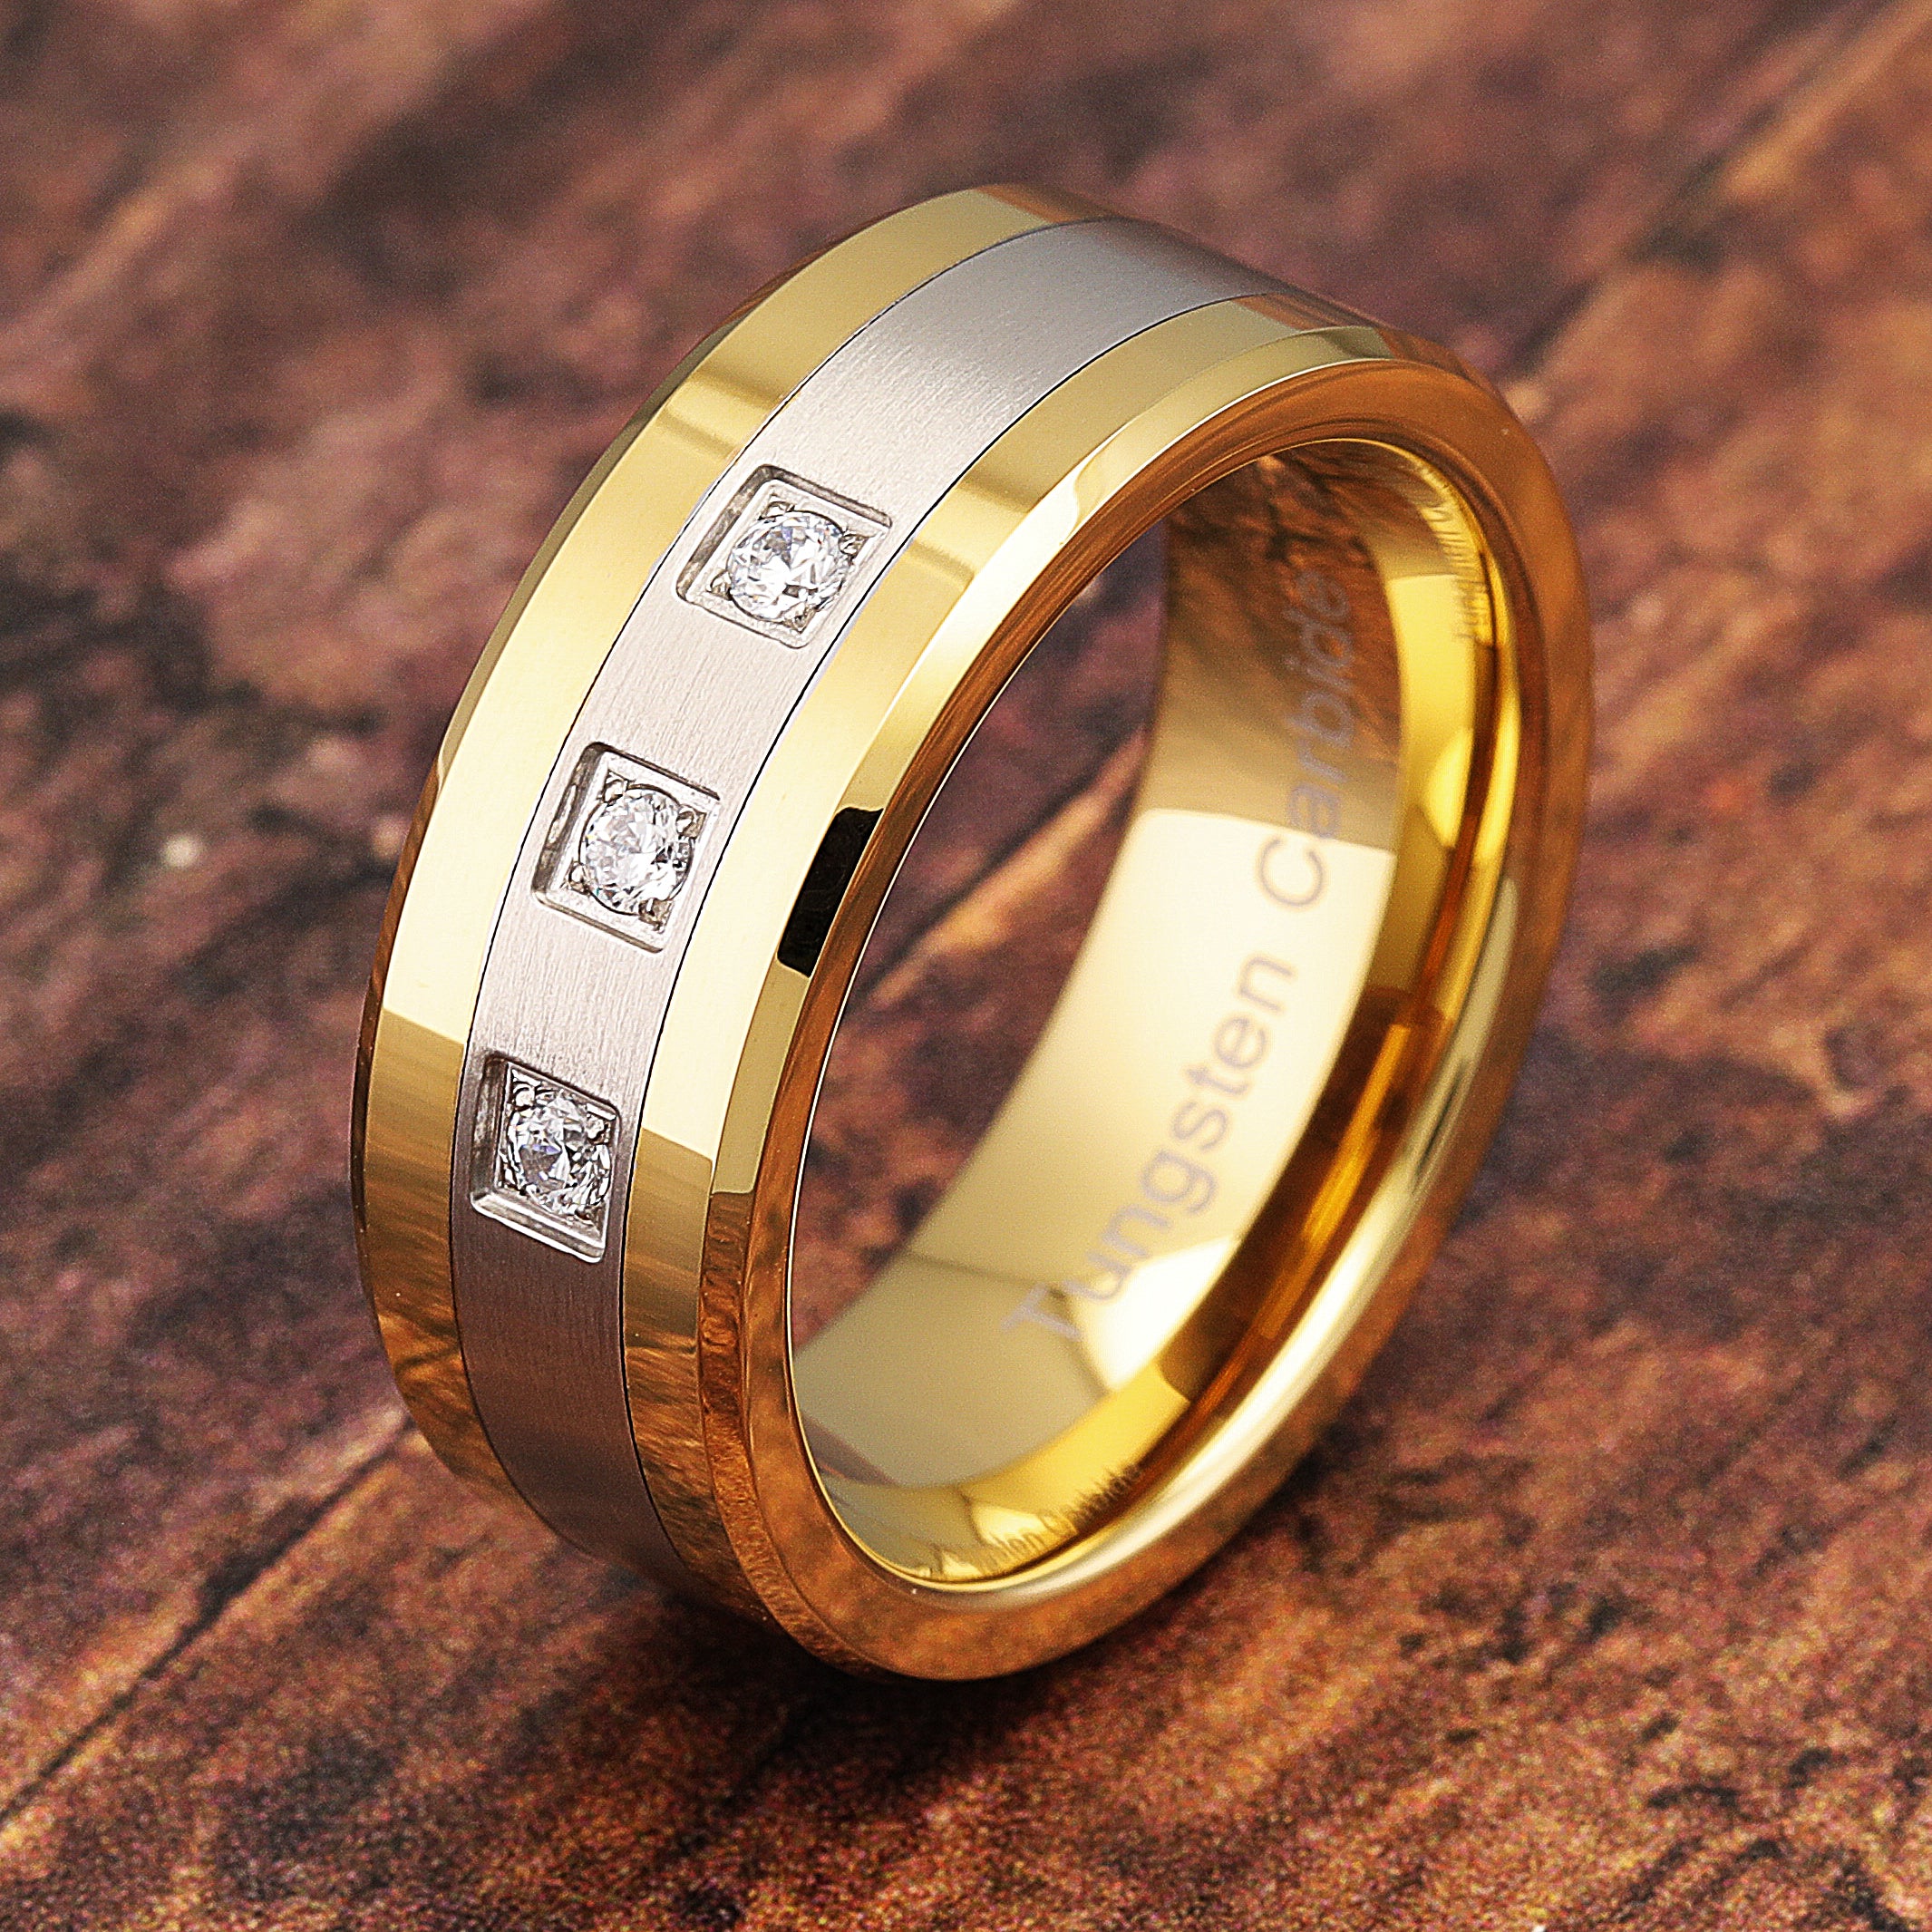 Unique Design Ruby Stone Gold Ring| Alibaba.com